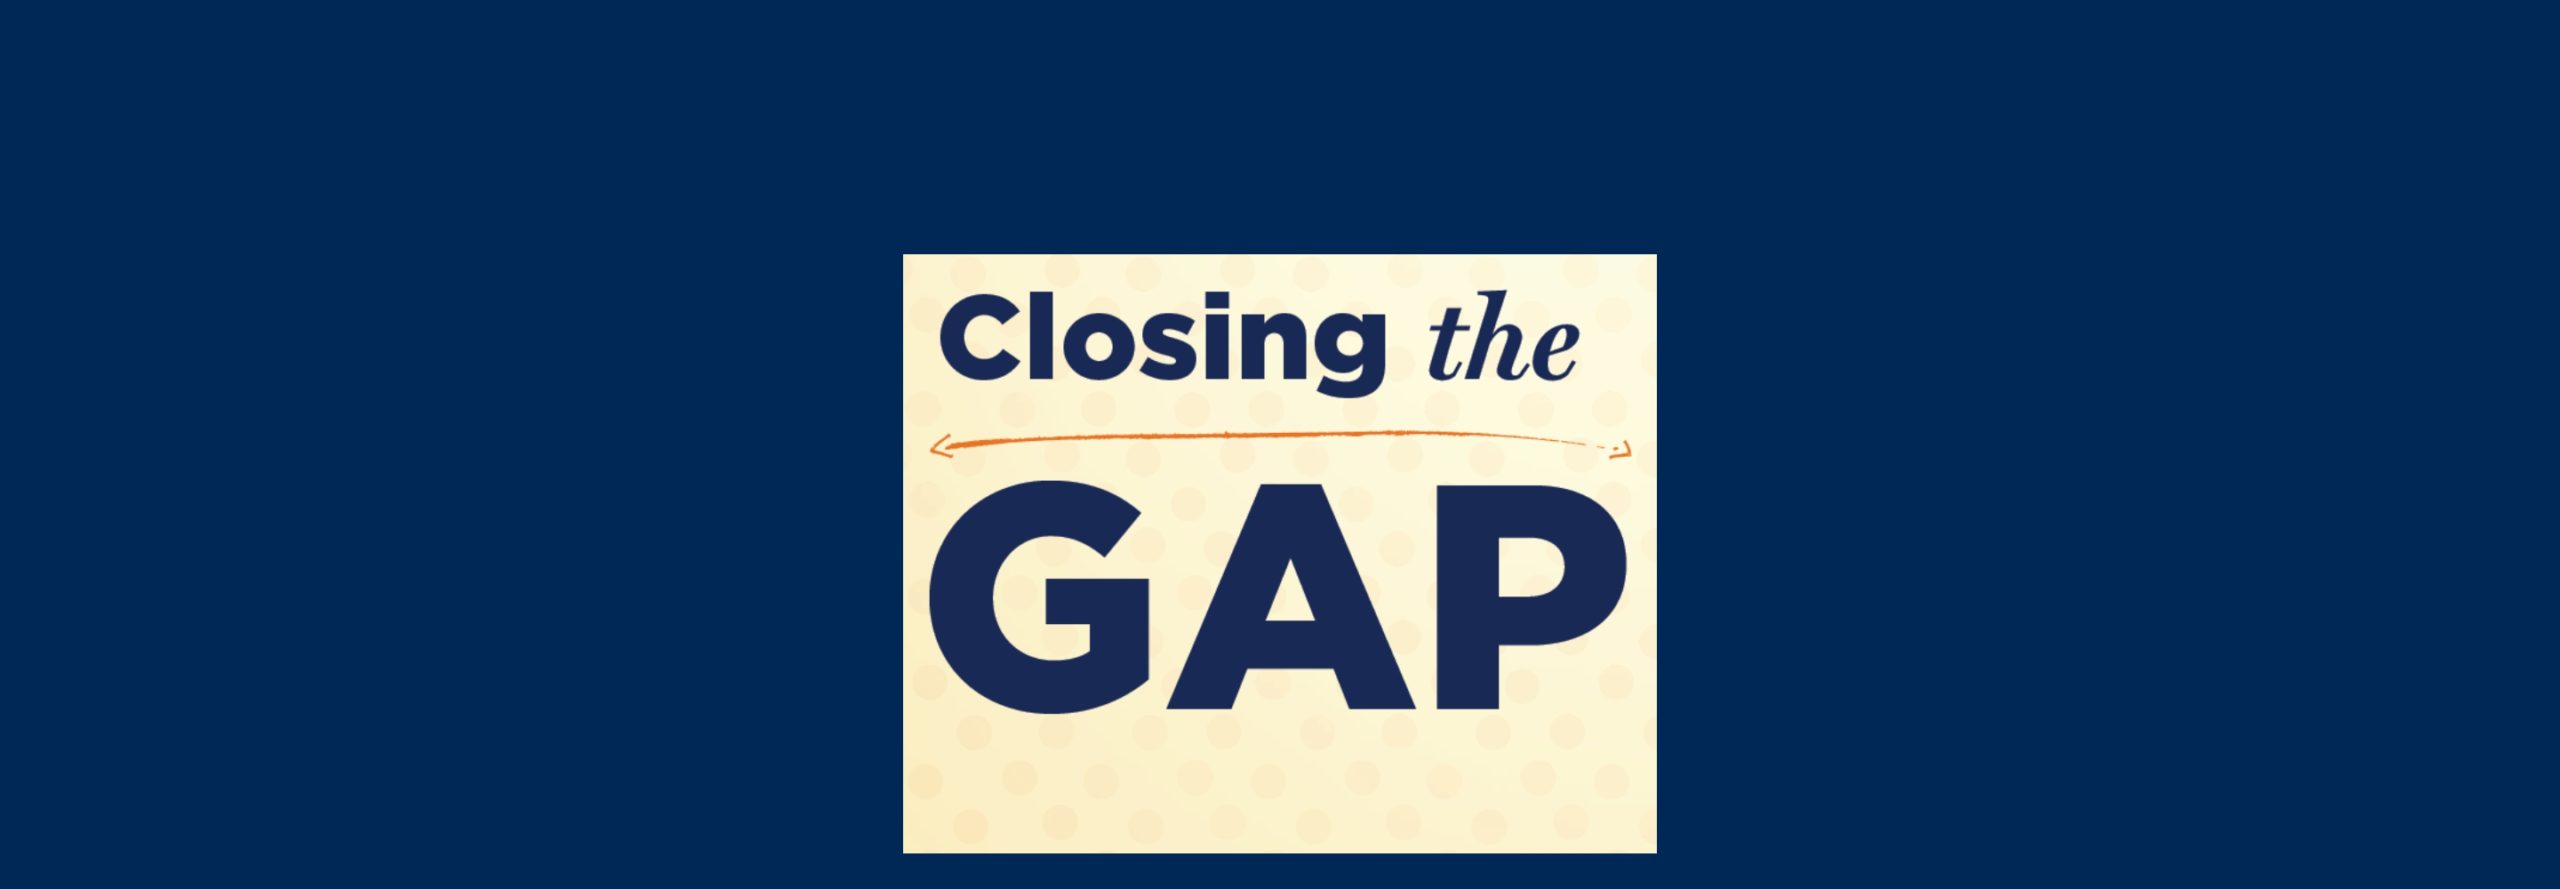 closing the gap